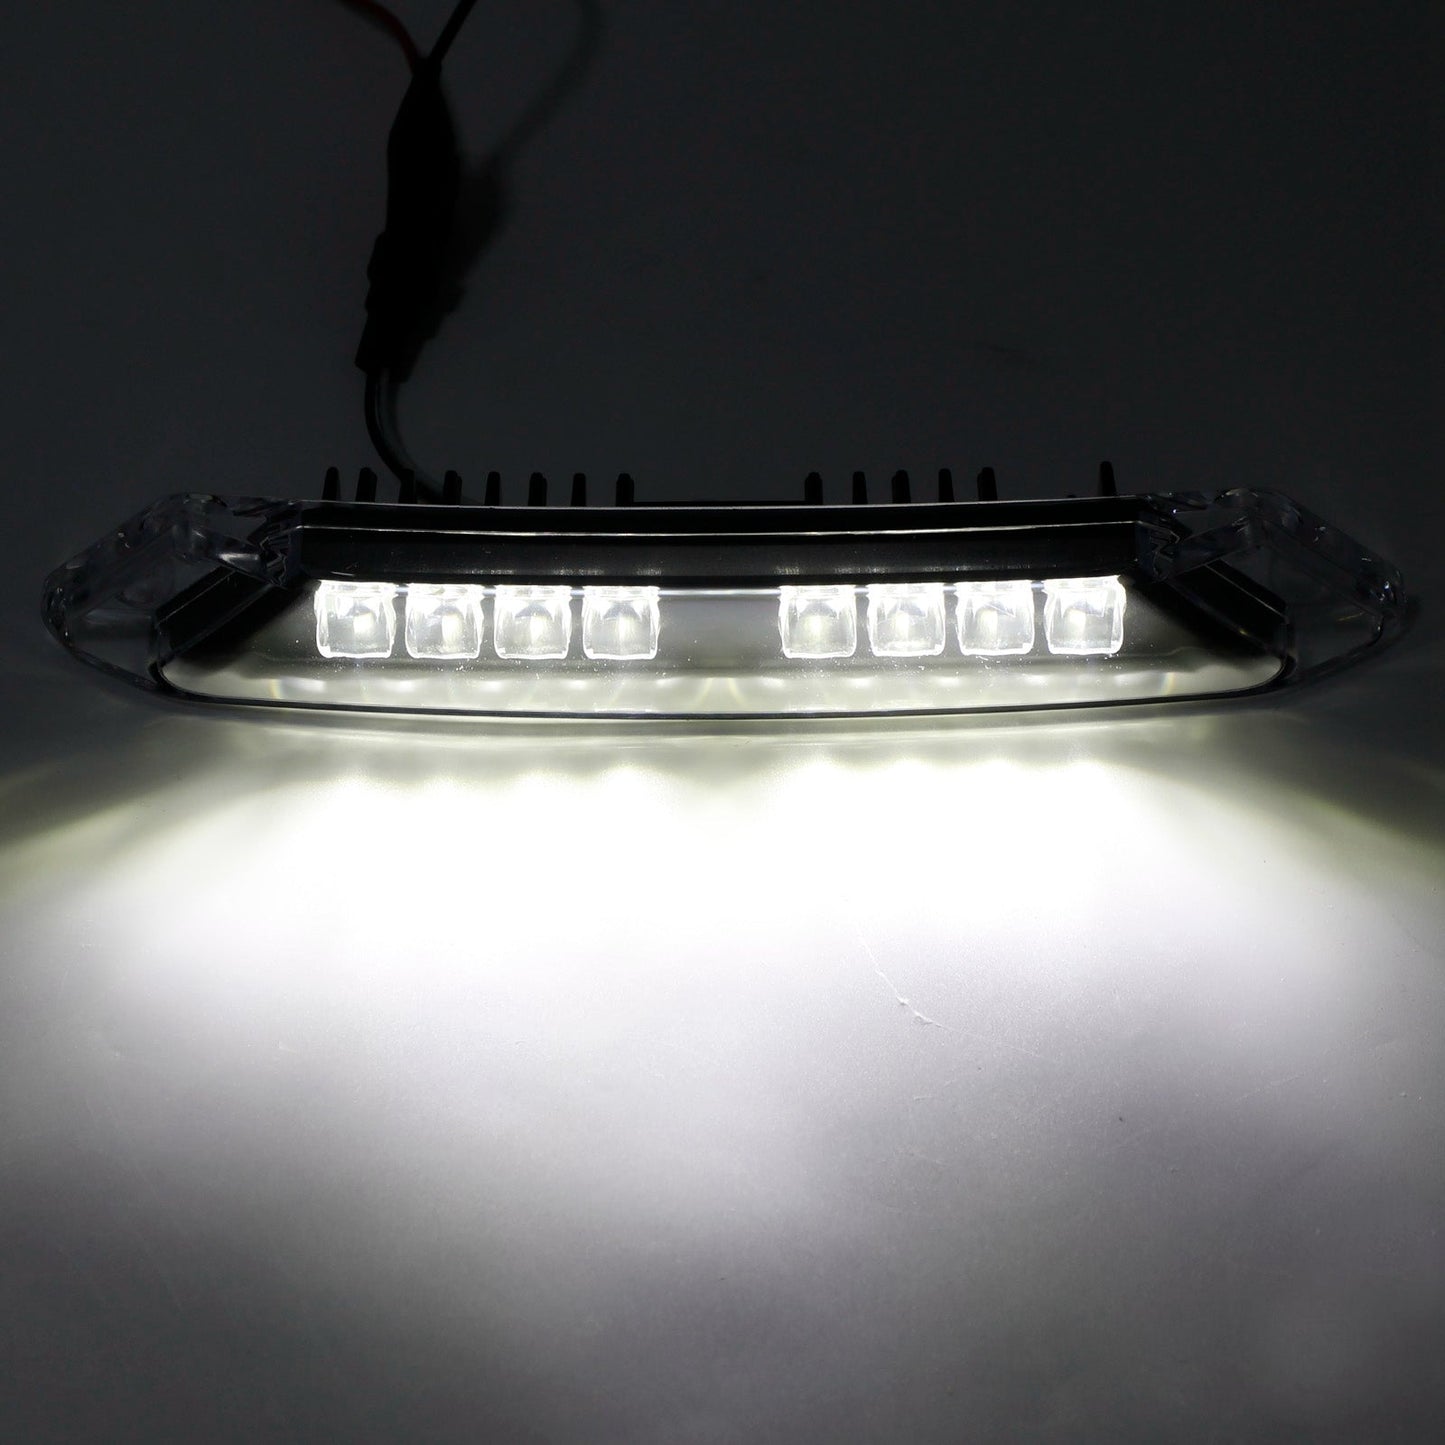 Can-Am Spyder RT 2020–2023 LED 219400991 Frontsto?stangenleuchte Zusatzlicht